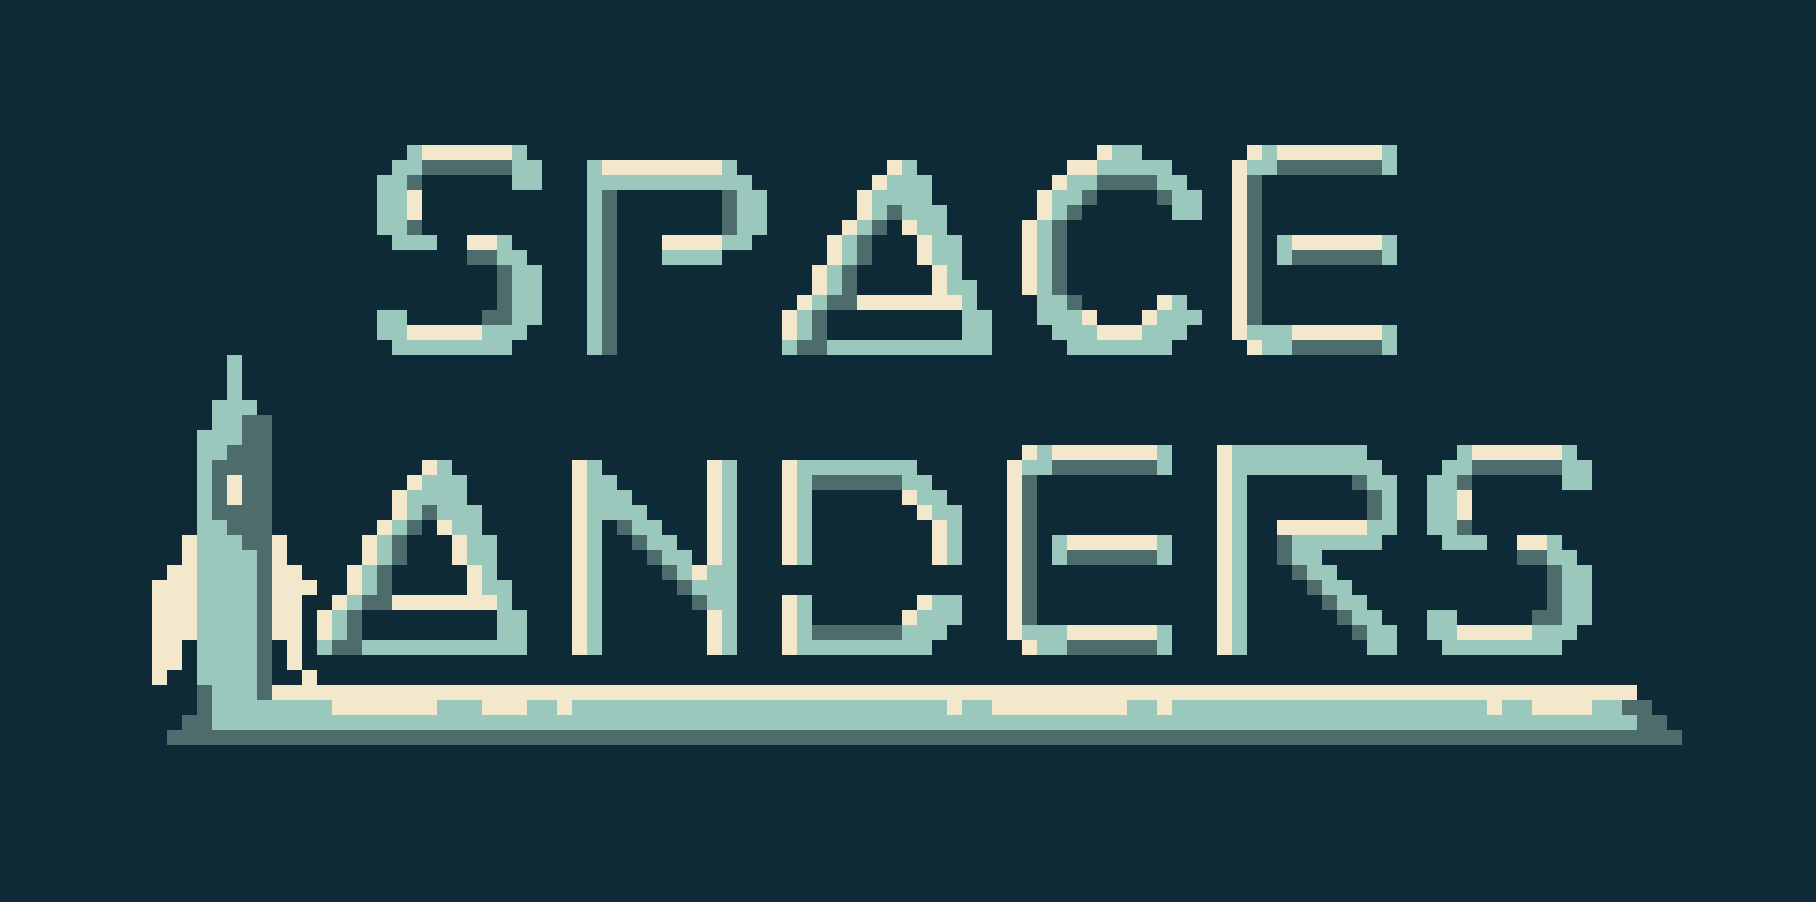 Space Landers